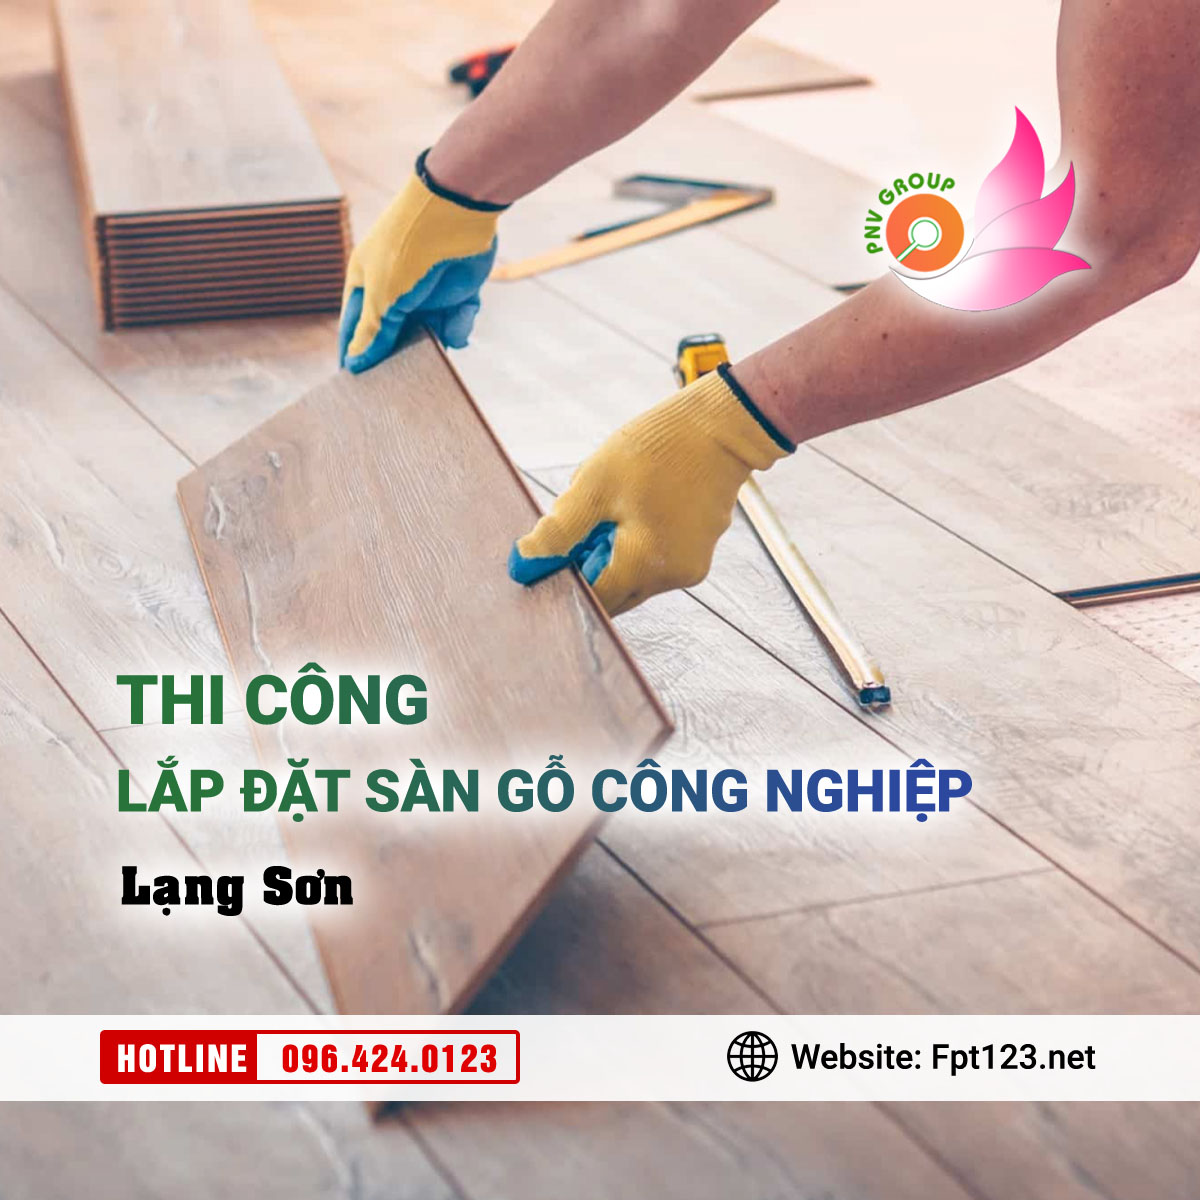 Thi công lắp đặt sàn gỗ công nghiệp tại Lạng Sơn